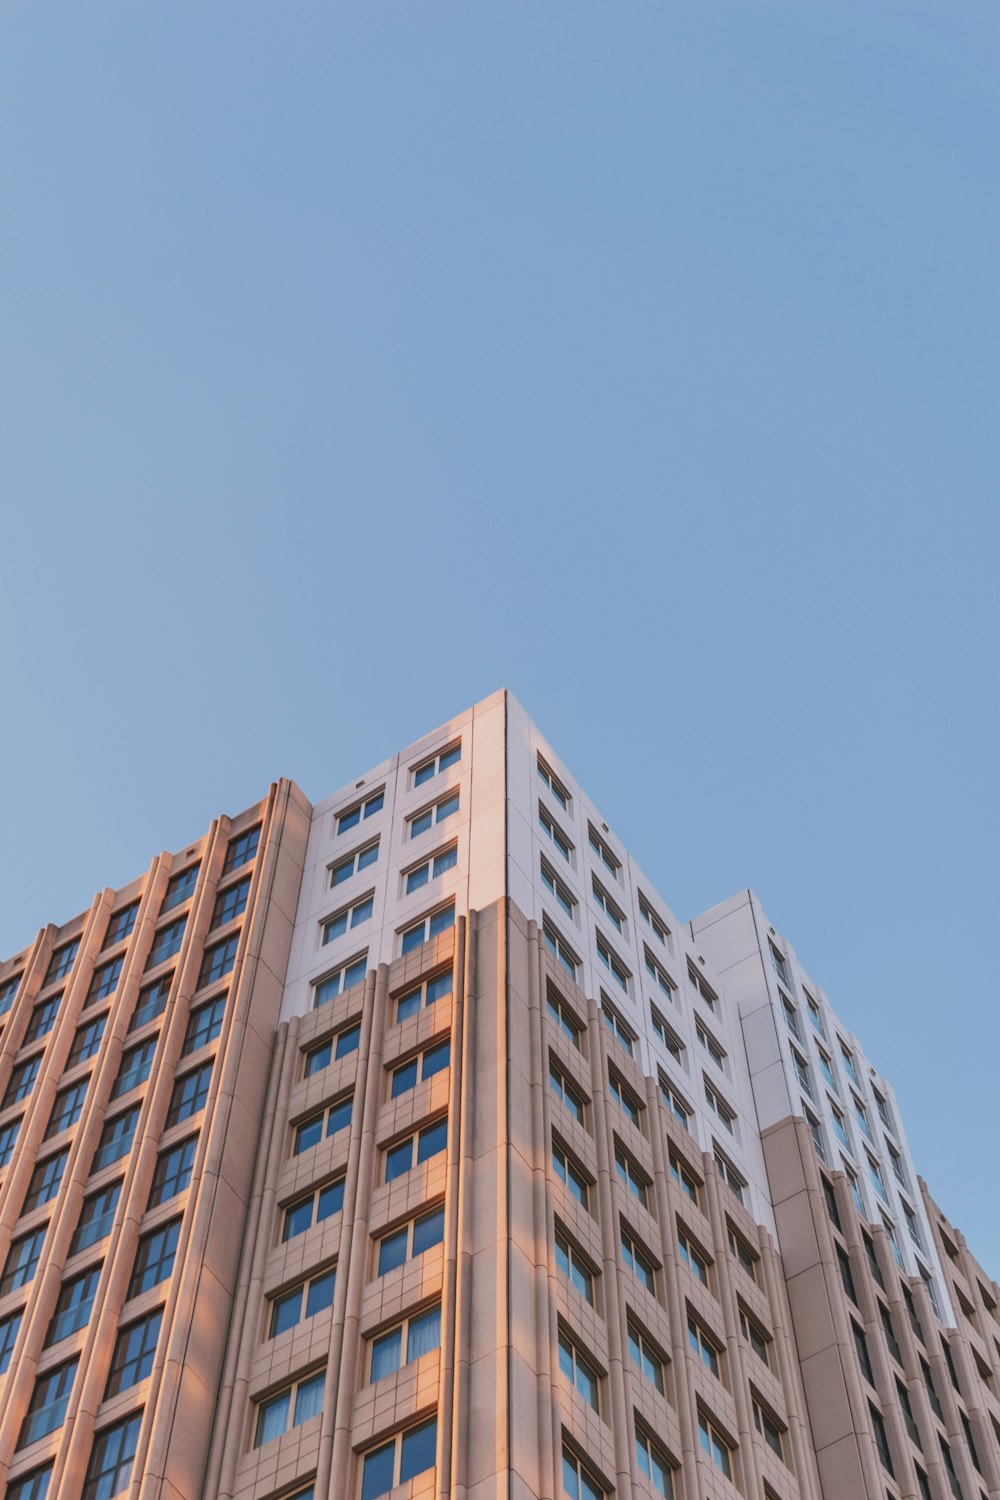 Edifício de concreto marrom sob o céu azul